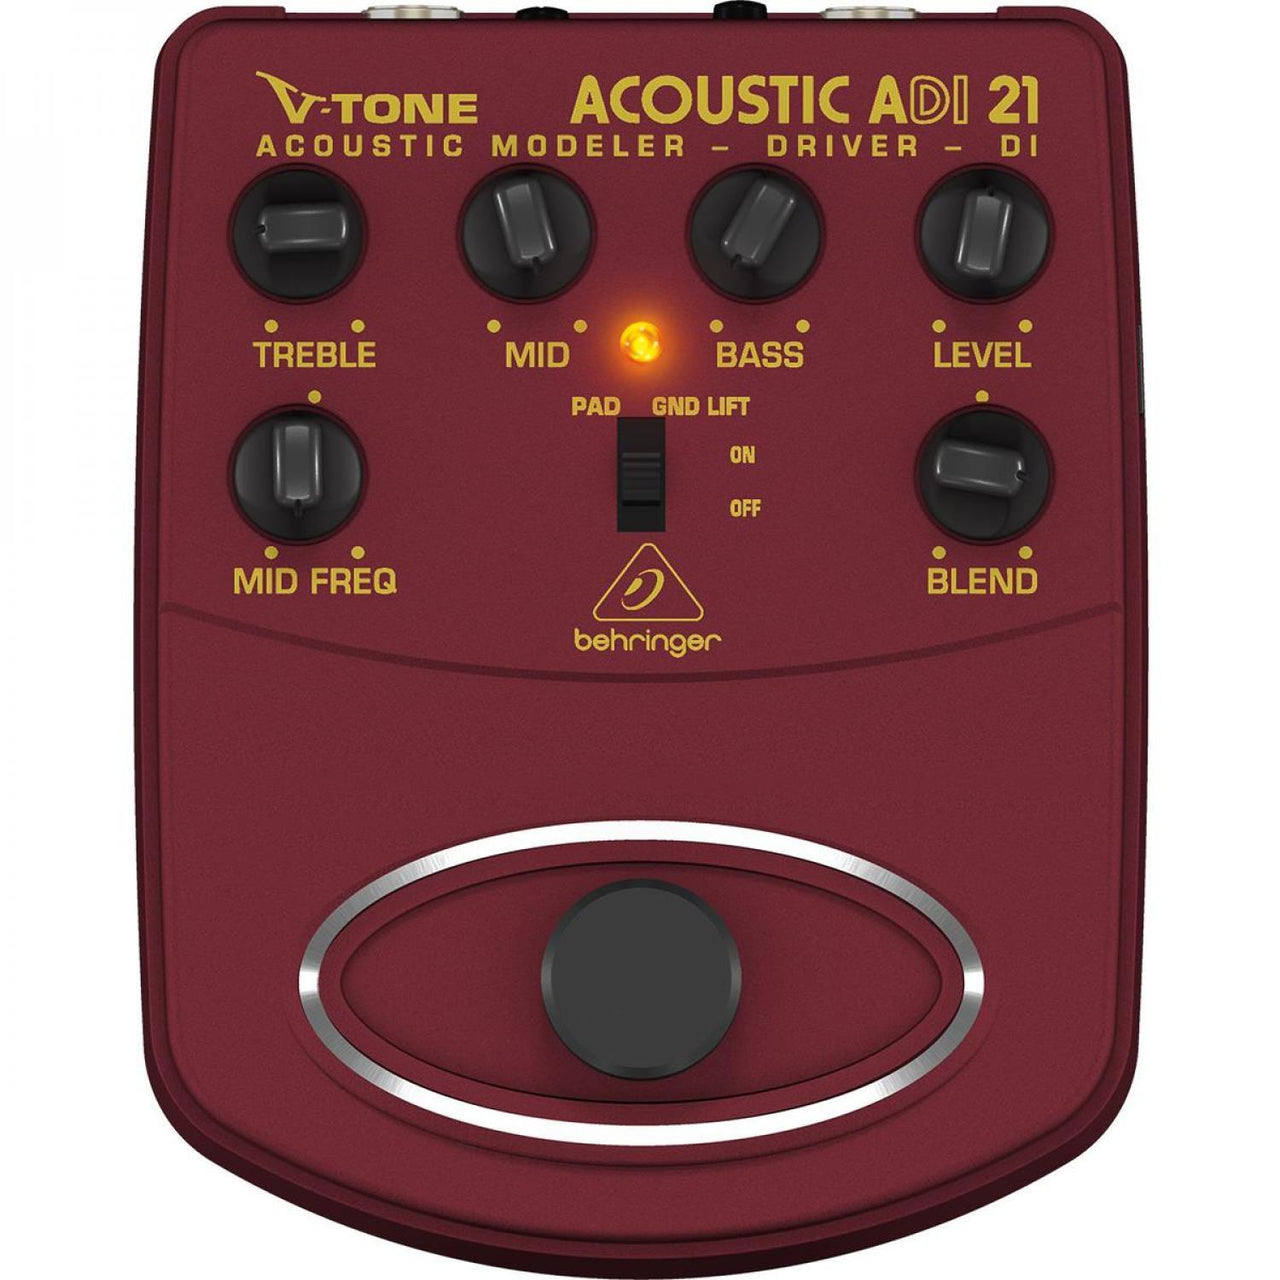 Pedal Behringer Ad121 V-tone Acoustic, Ad121